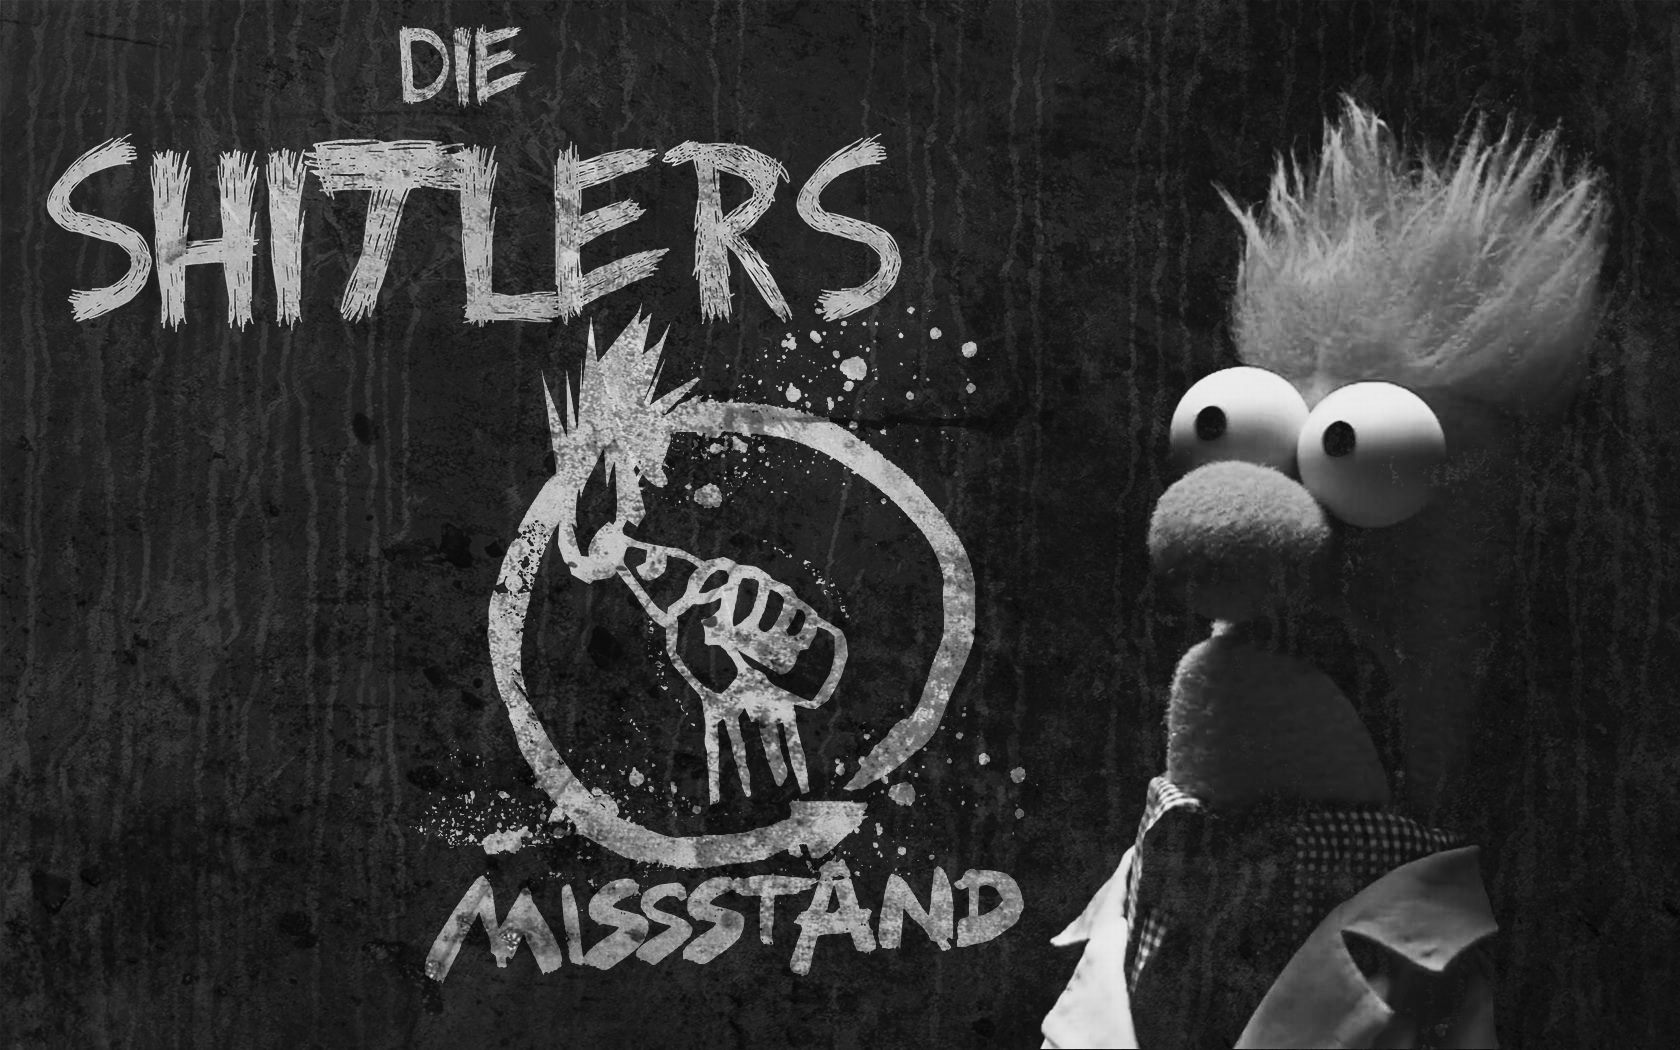 shitlers, die + missstand @menschenzoo, hamburg, 20151231